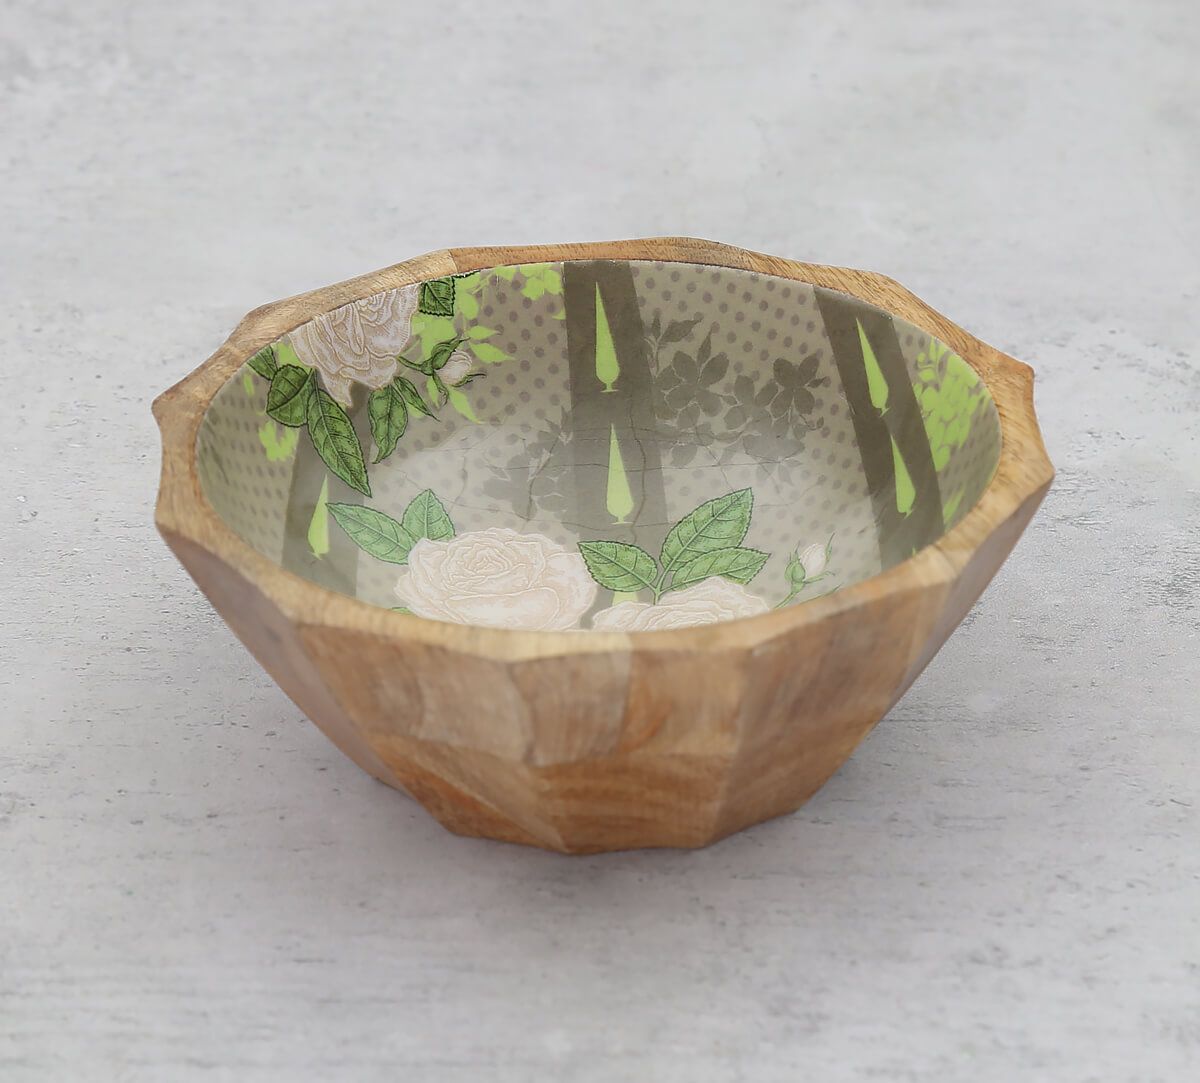 India Cricus by Krsnaa Mehta Rose Alba's Tenor Small Wooden Bowl